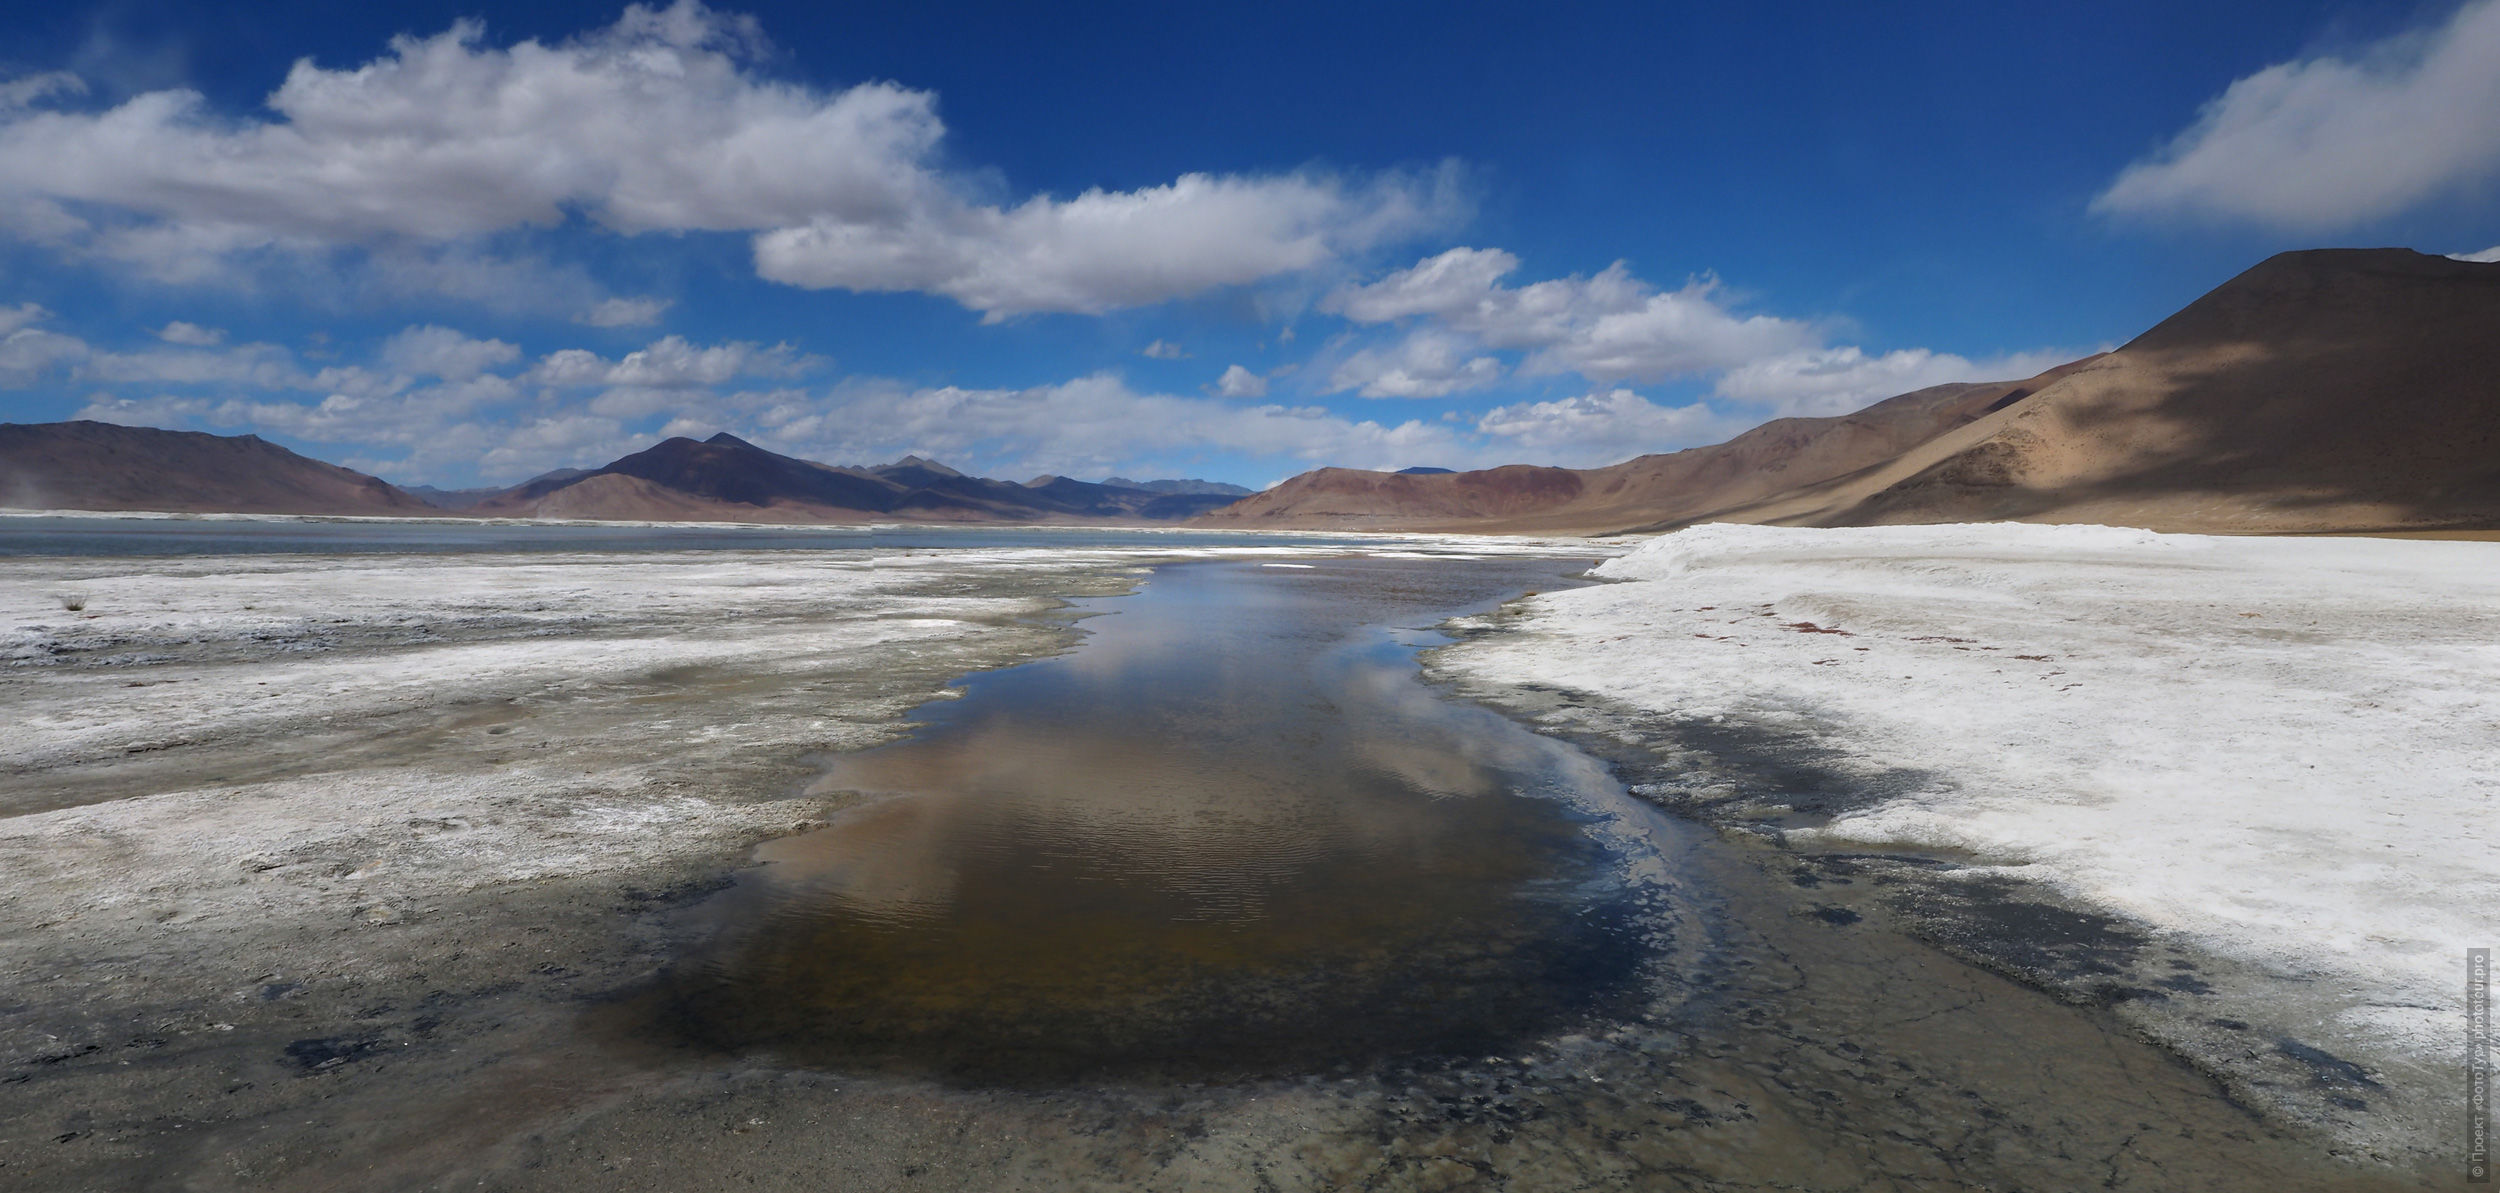 Озеро Тсо Кар. фототур Тибет Озерный, июнь 2018 года в Ладакхе.